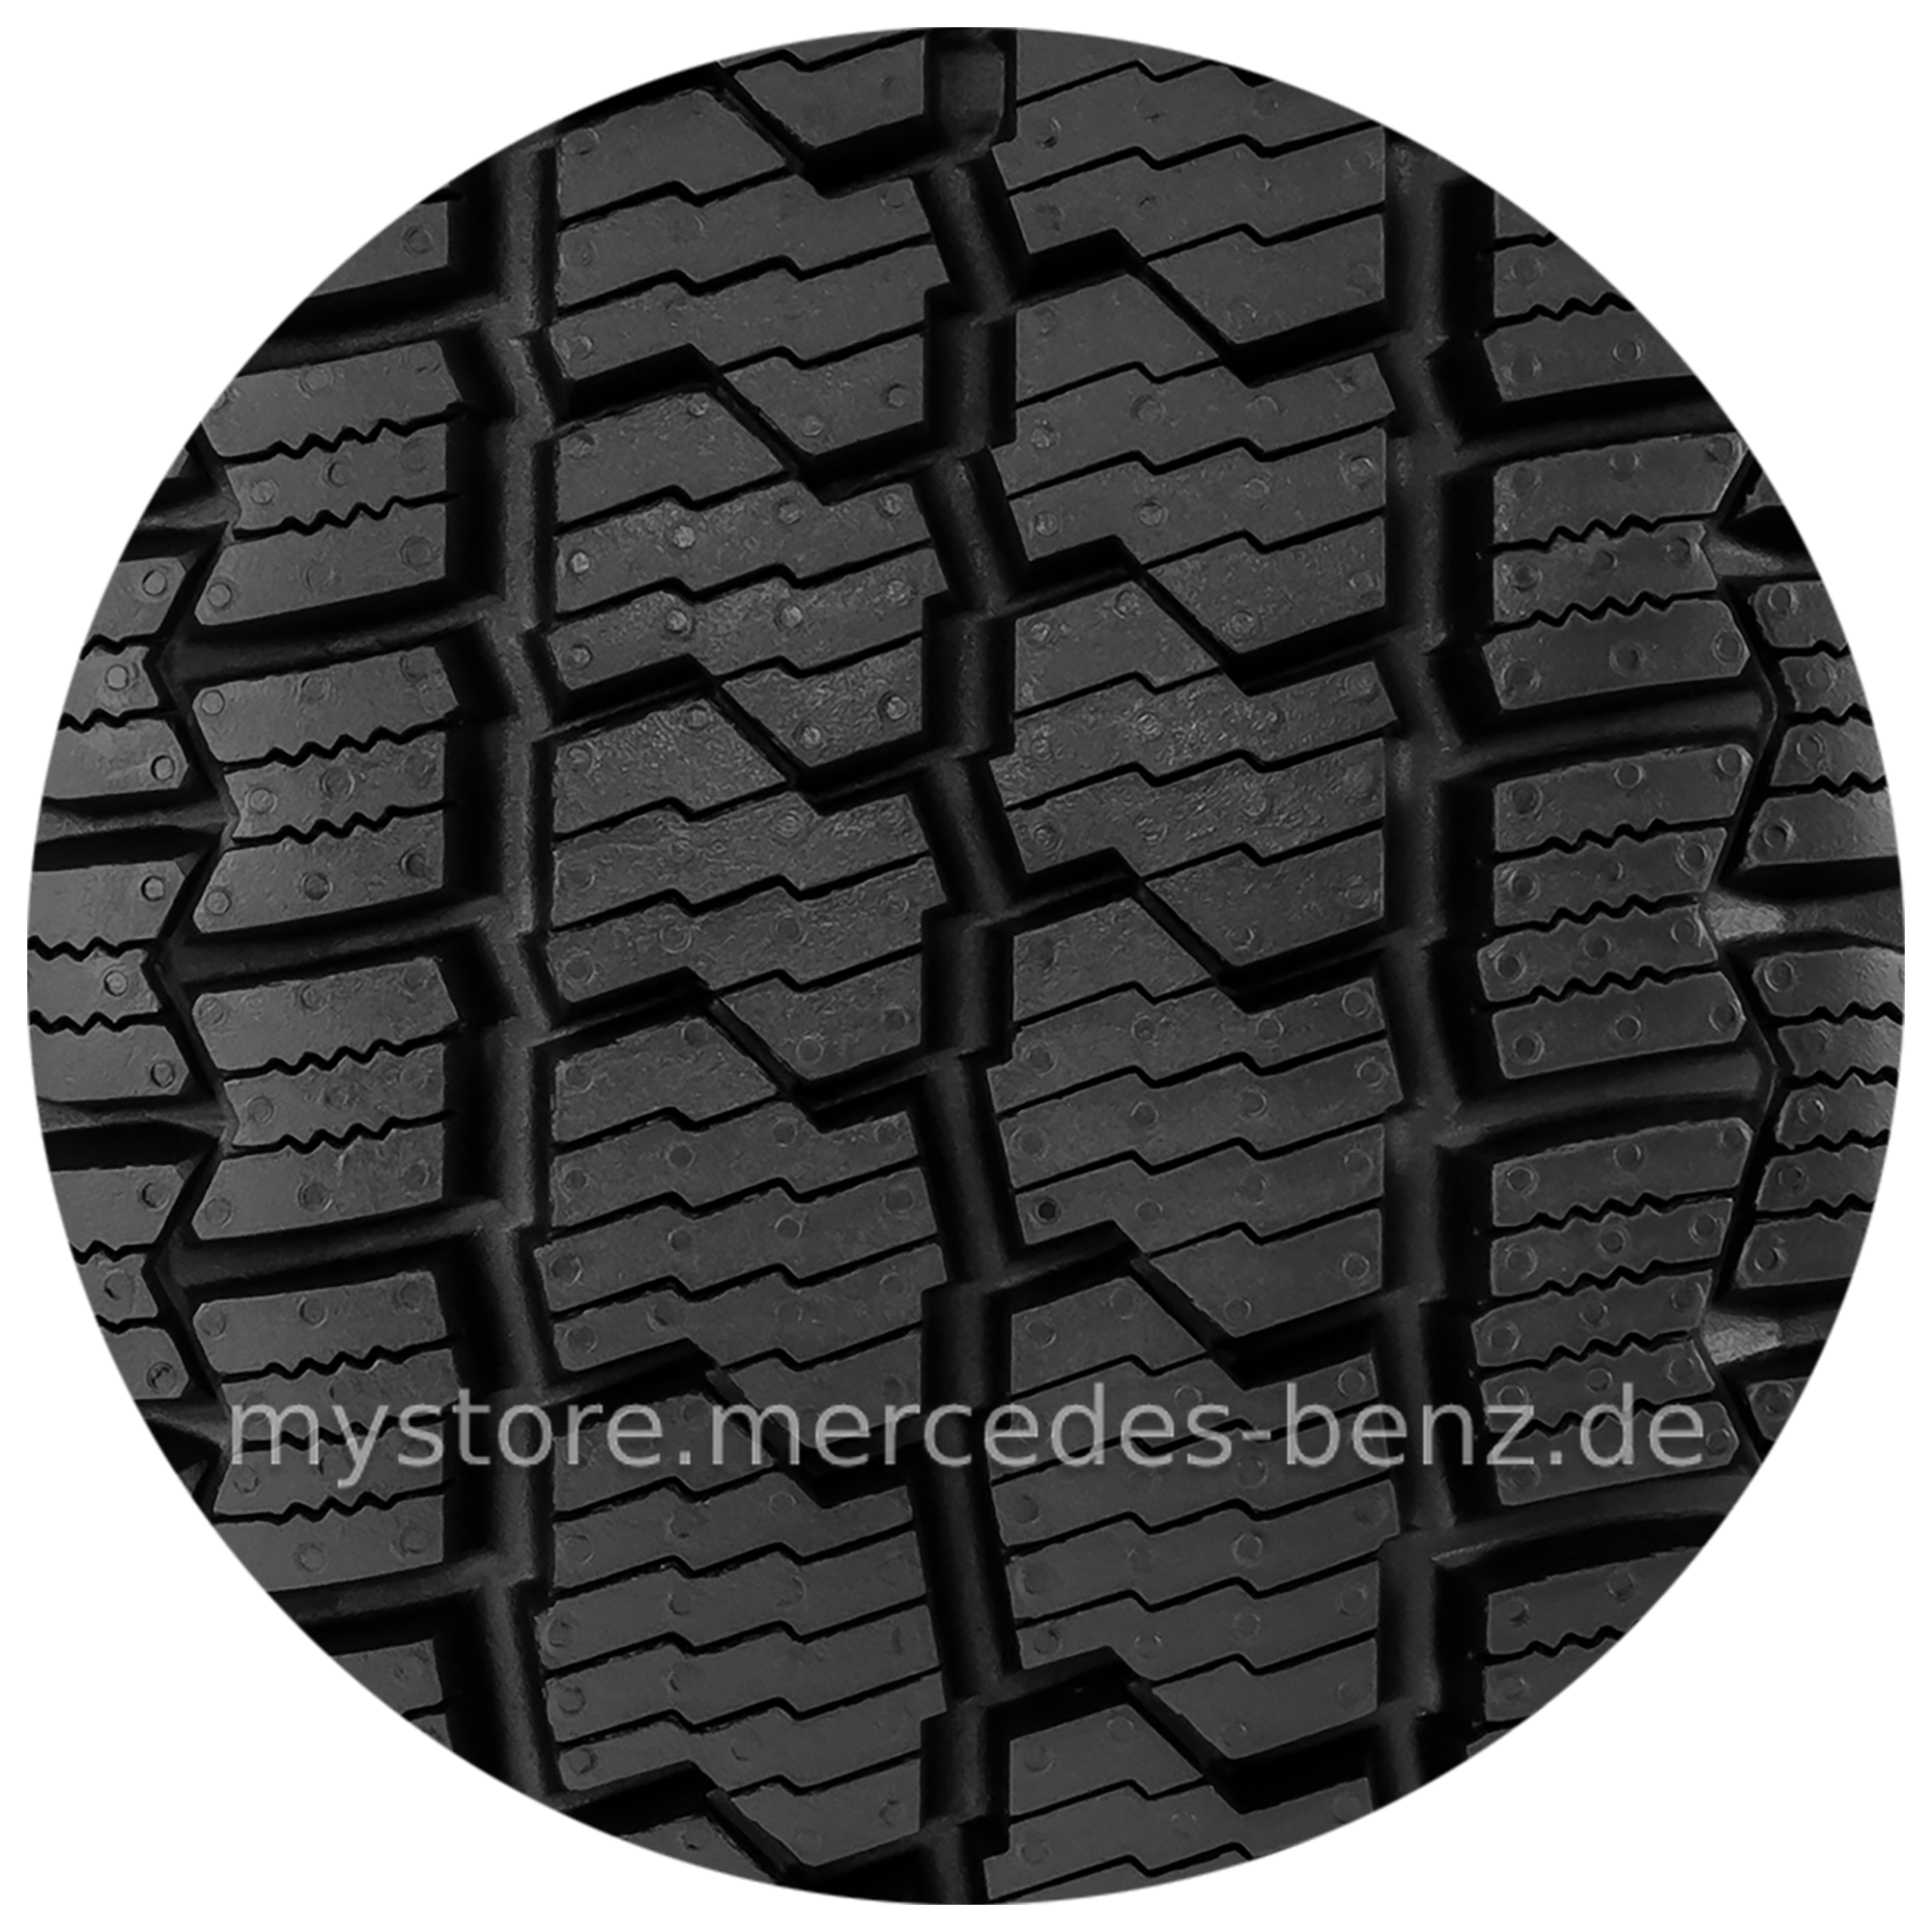 Räder & Reifen - Mercedes-Benz Online Store